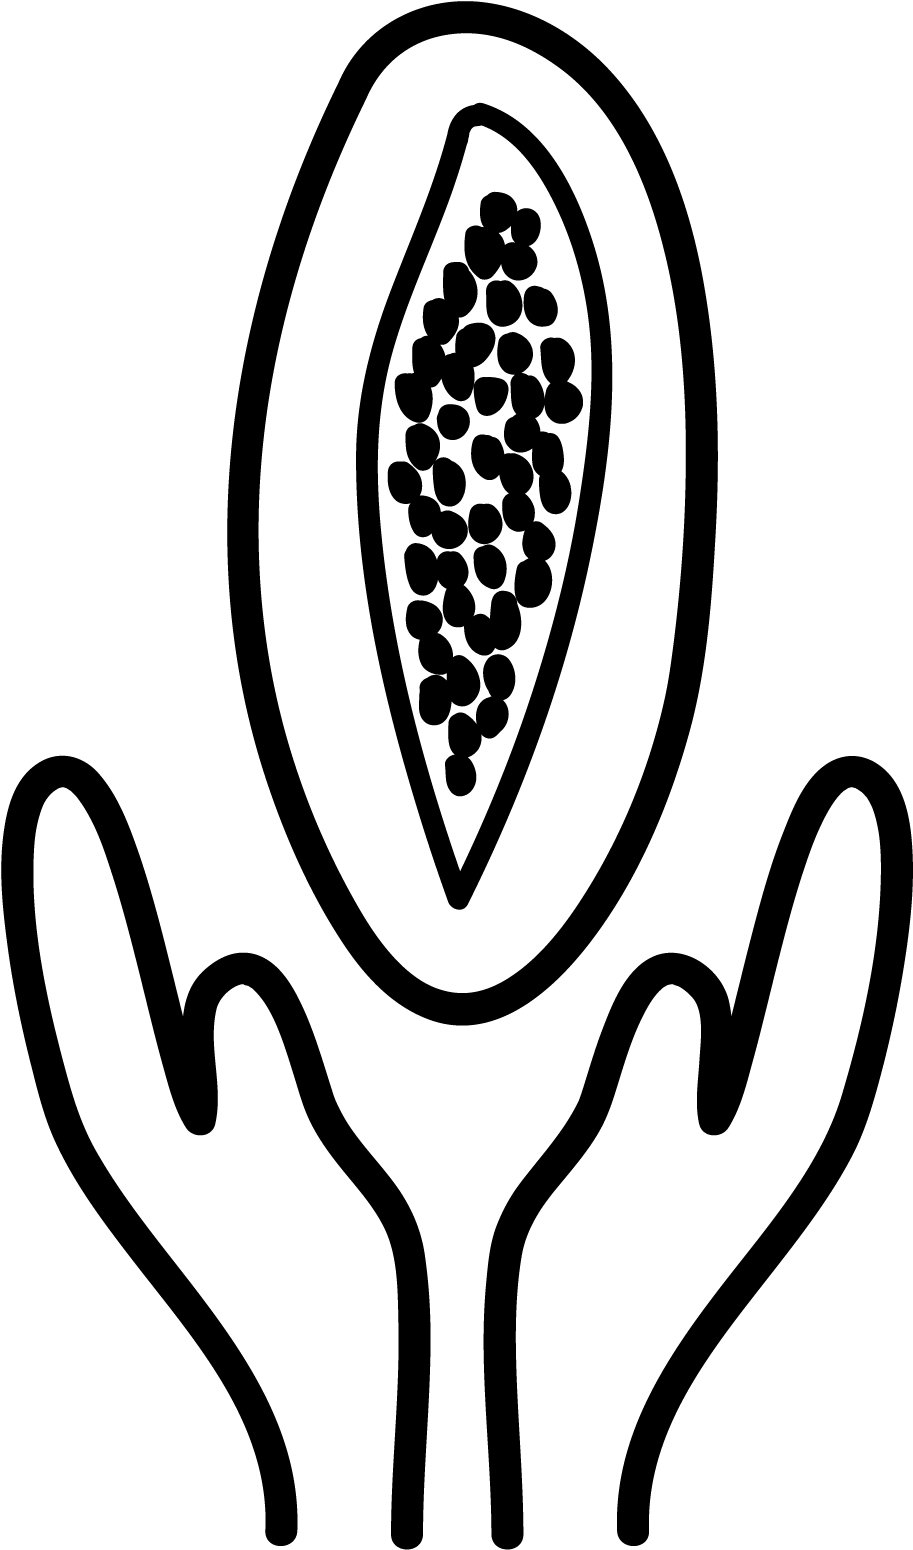 Dar Papaya - Emblem (1800x1800)